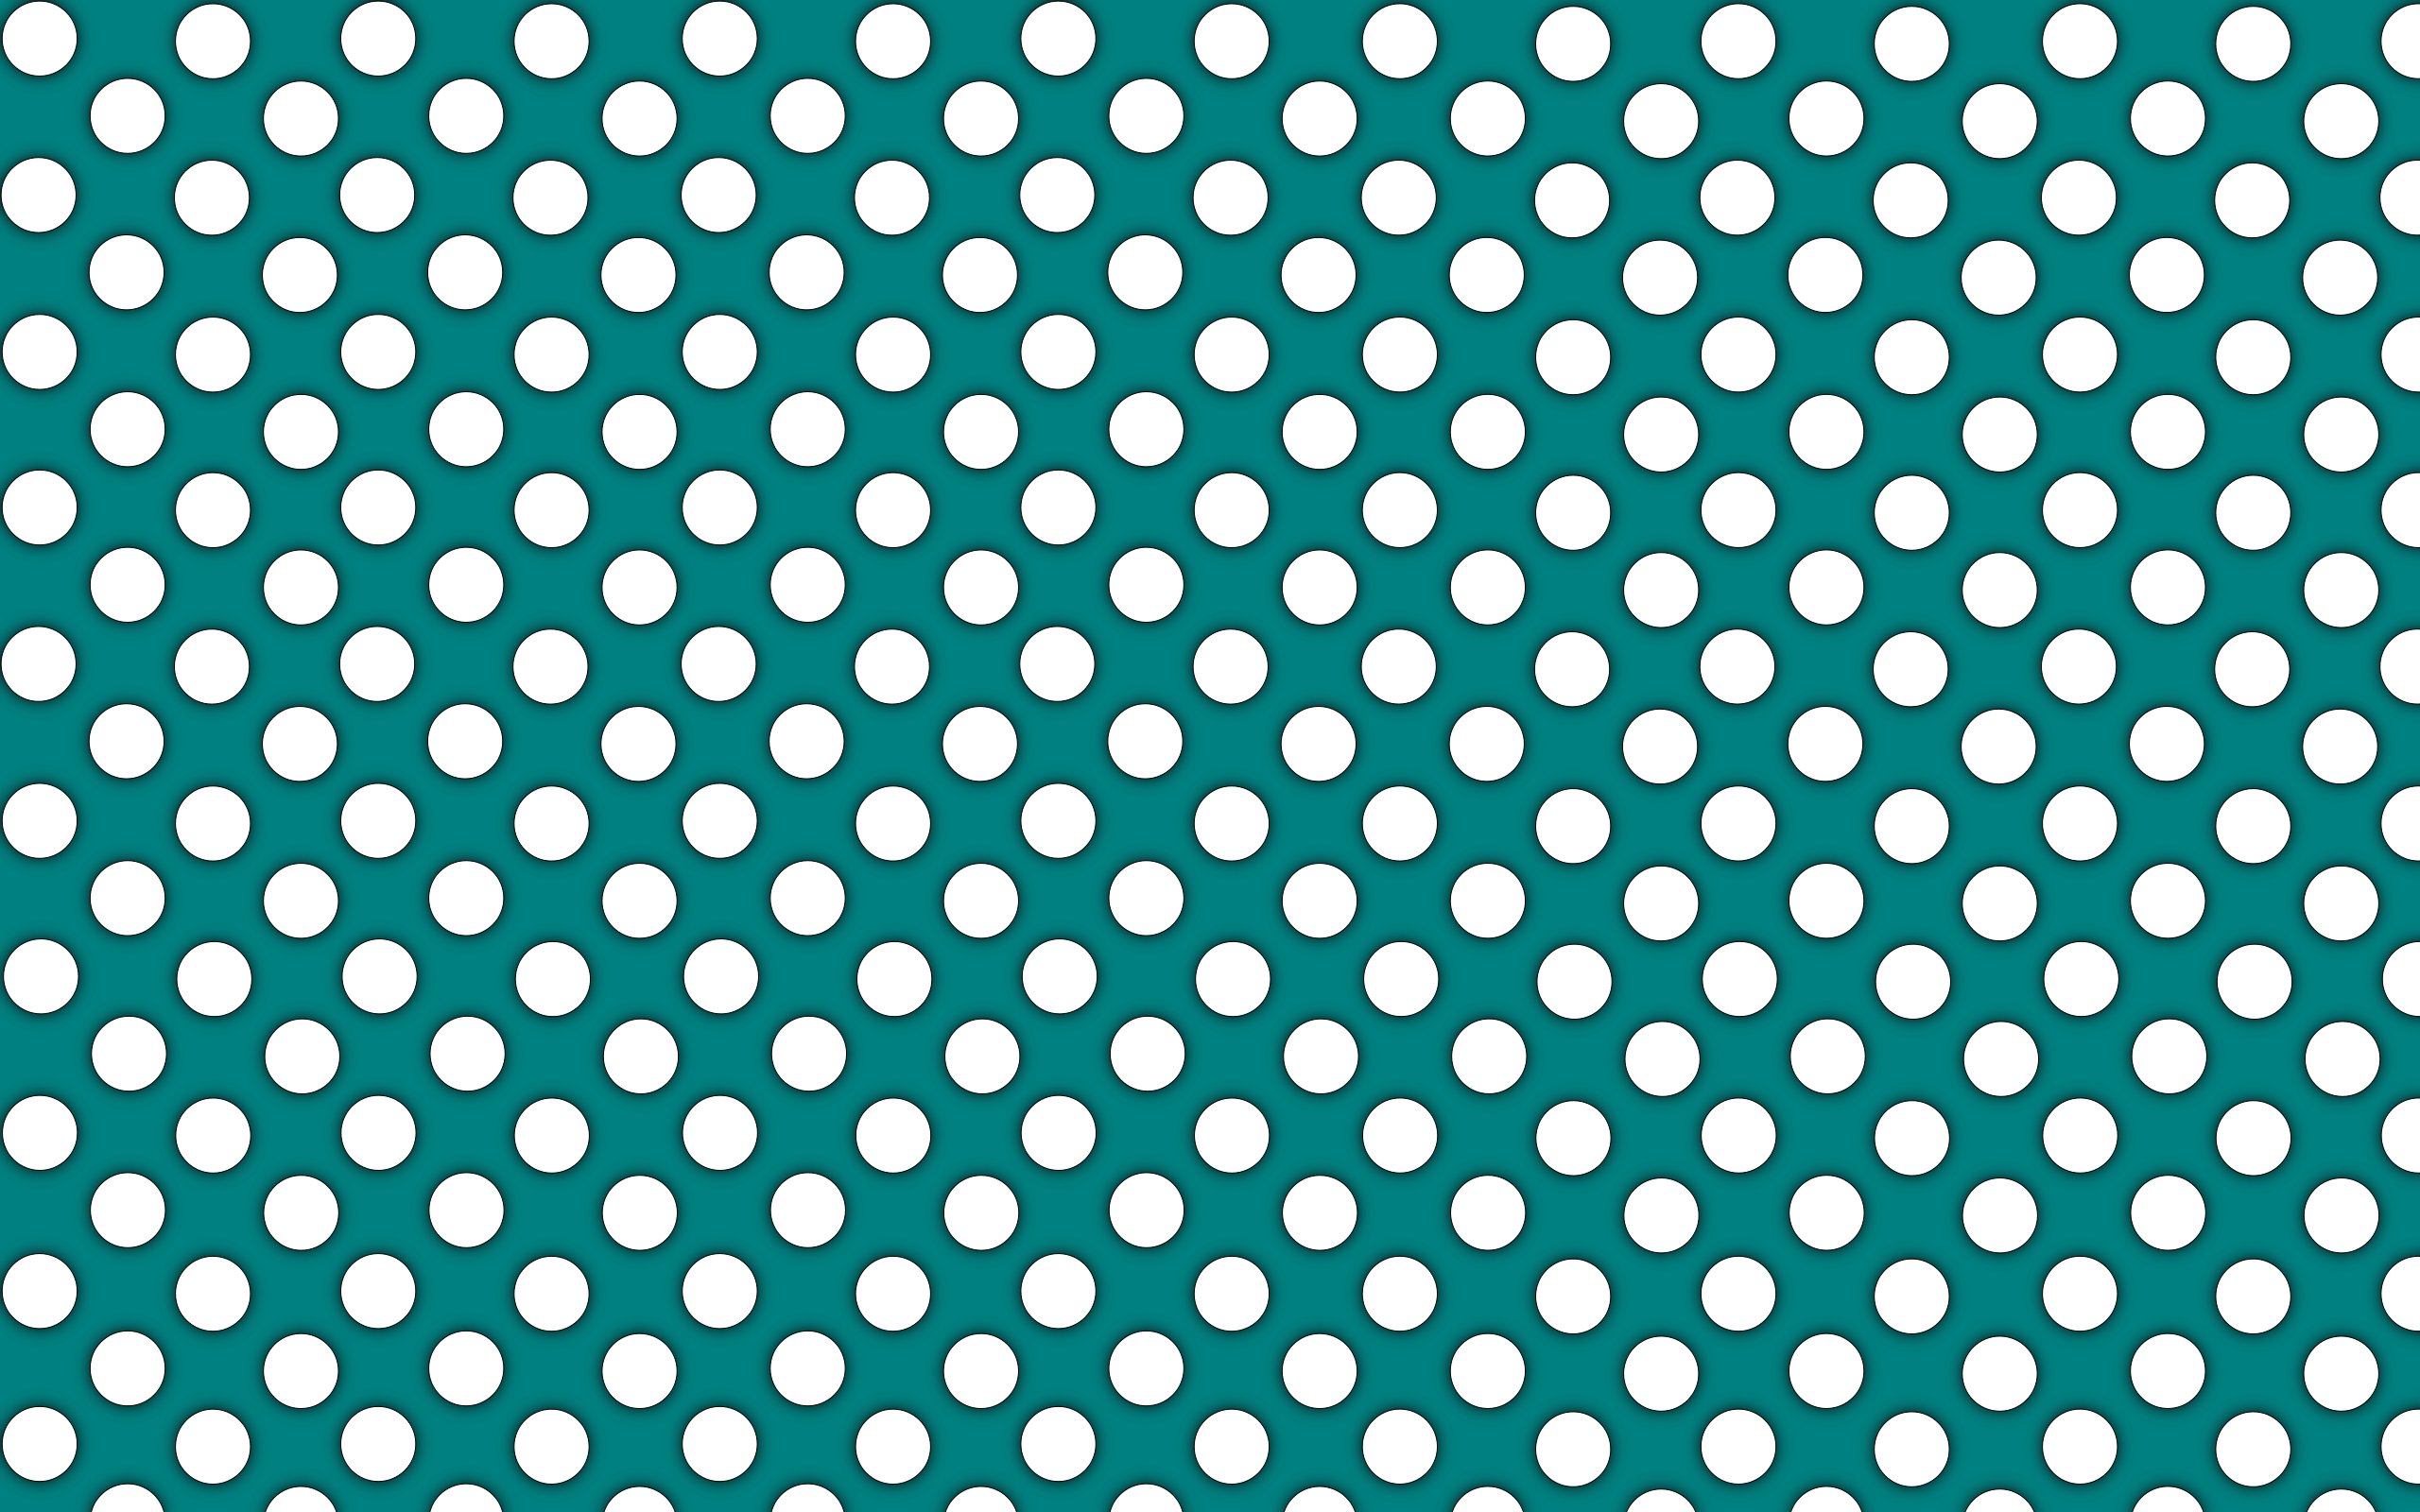 [45+] Black Polka Dot Wallpaper | WallpaperSafari.com